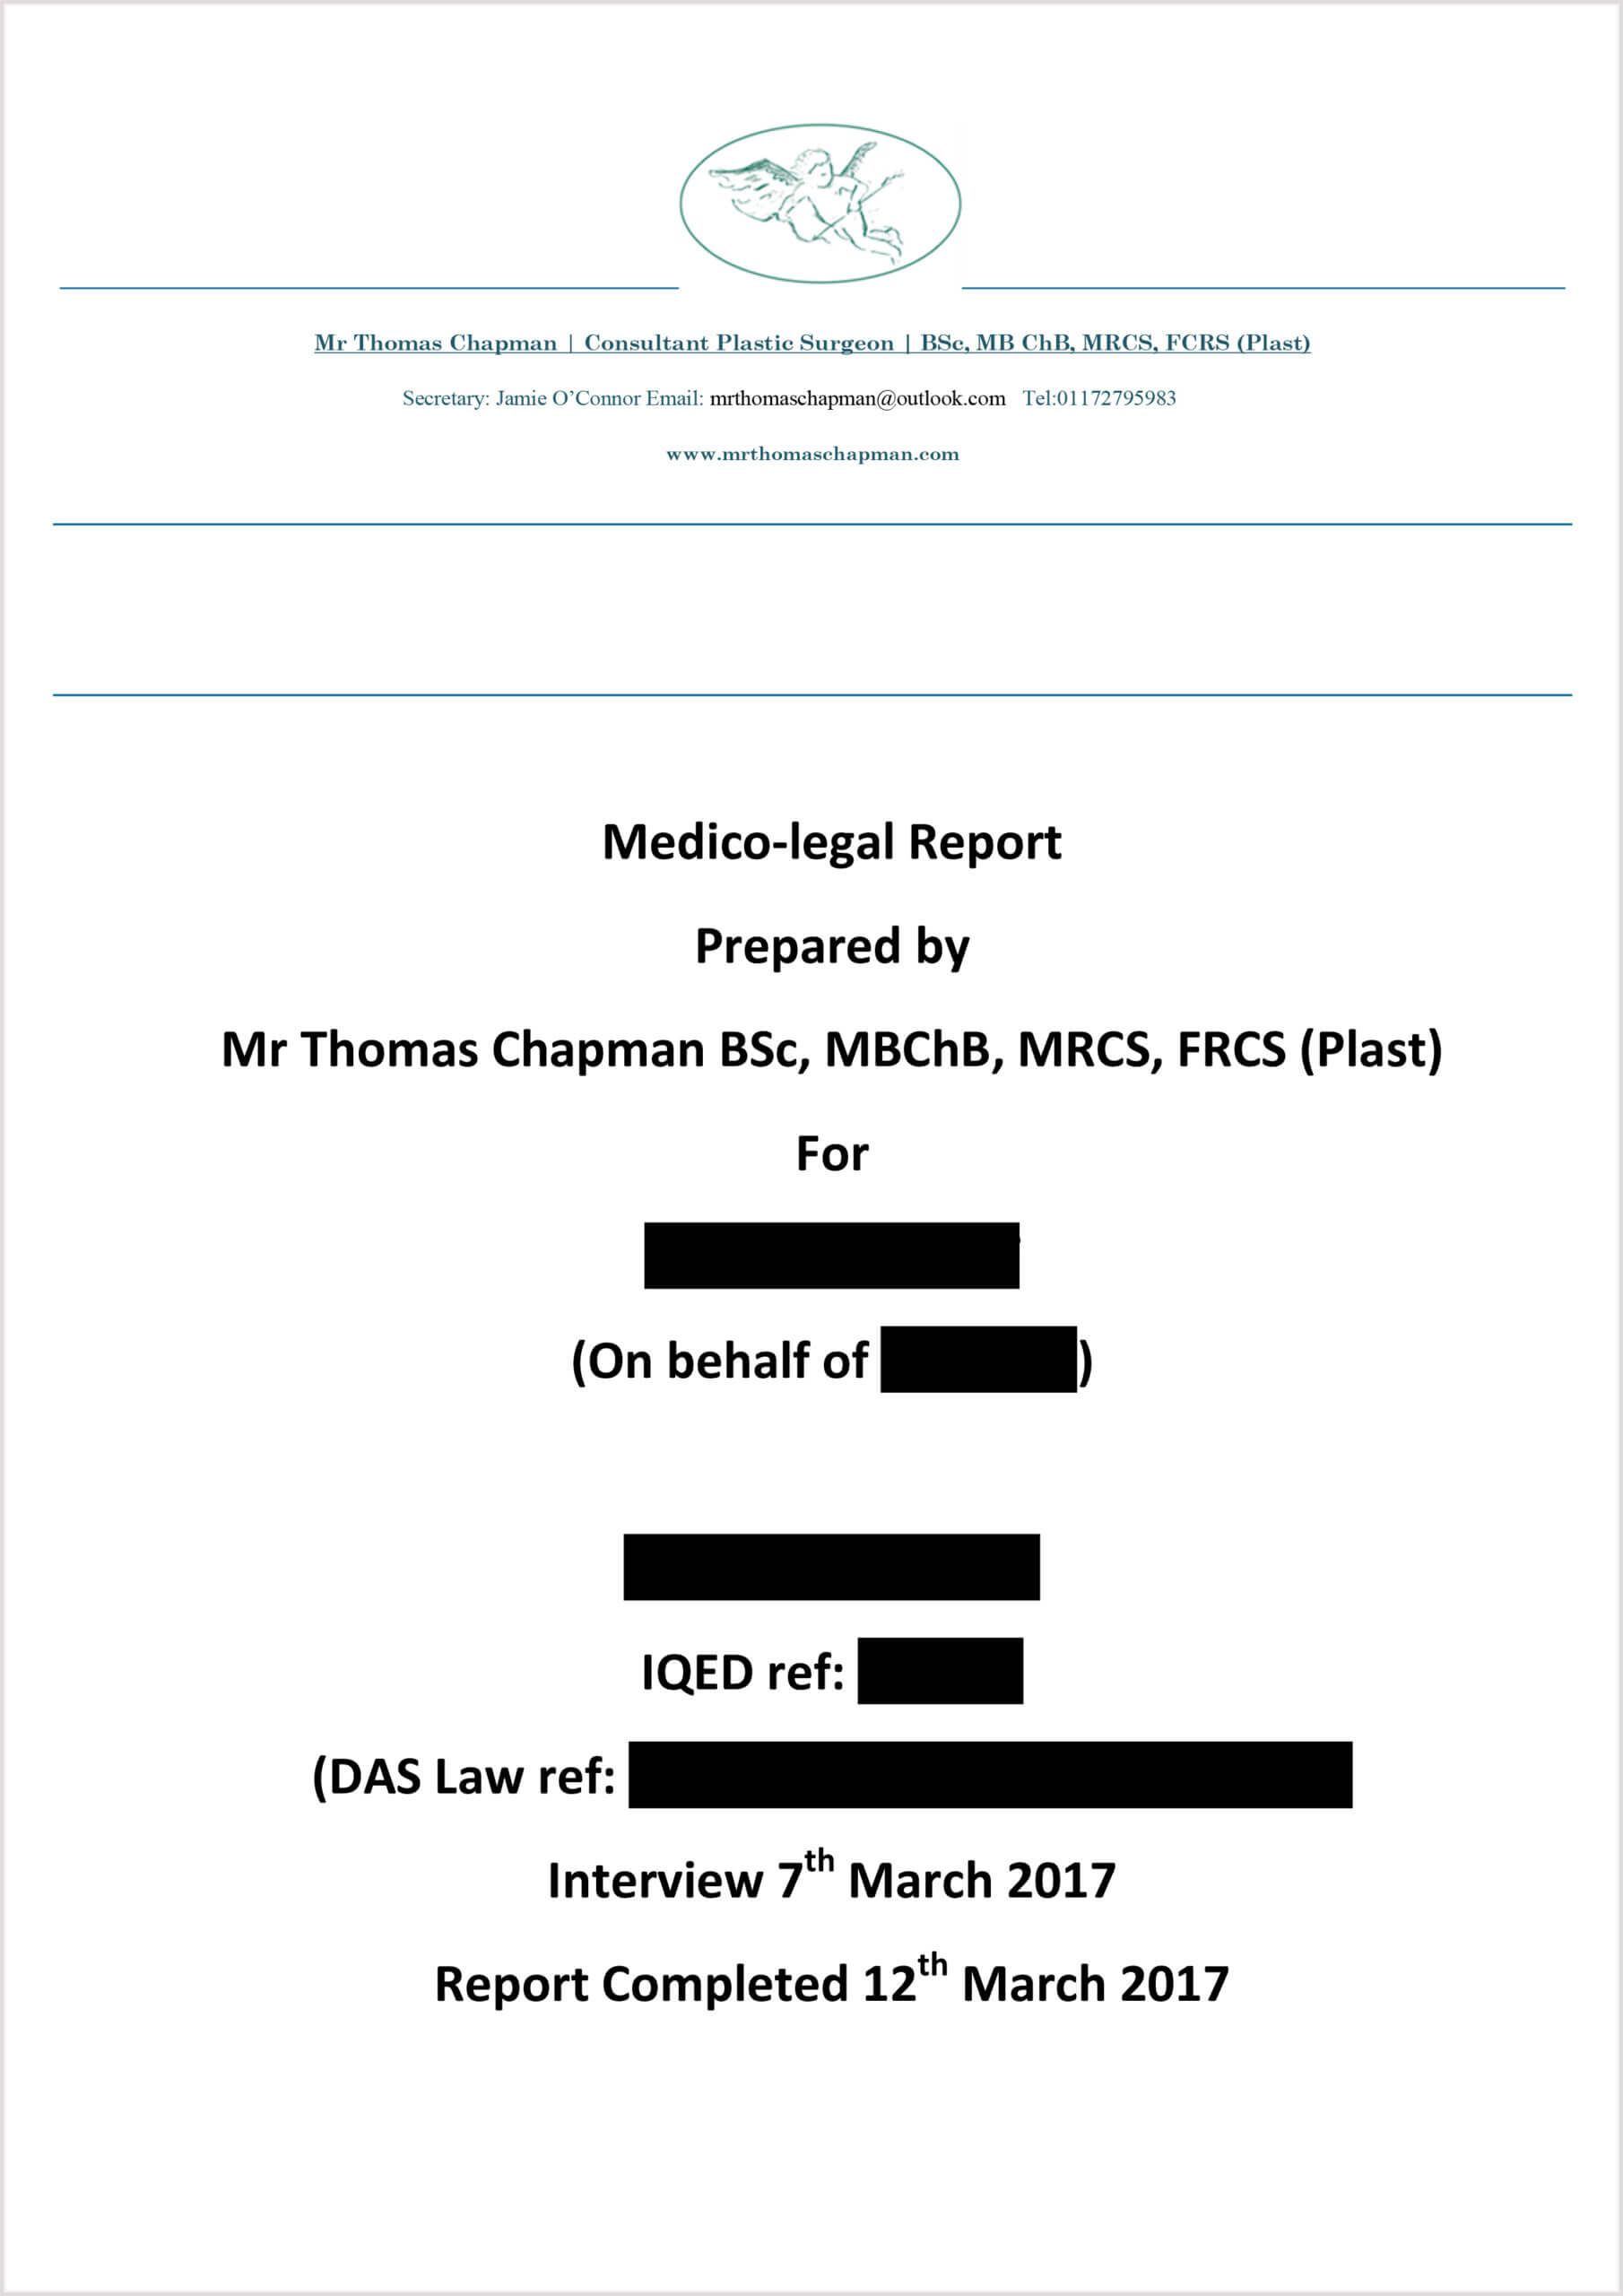 Medicolegal Reporting – Mr Thomas Chapman Pertaining To Medical Legal Report Template